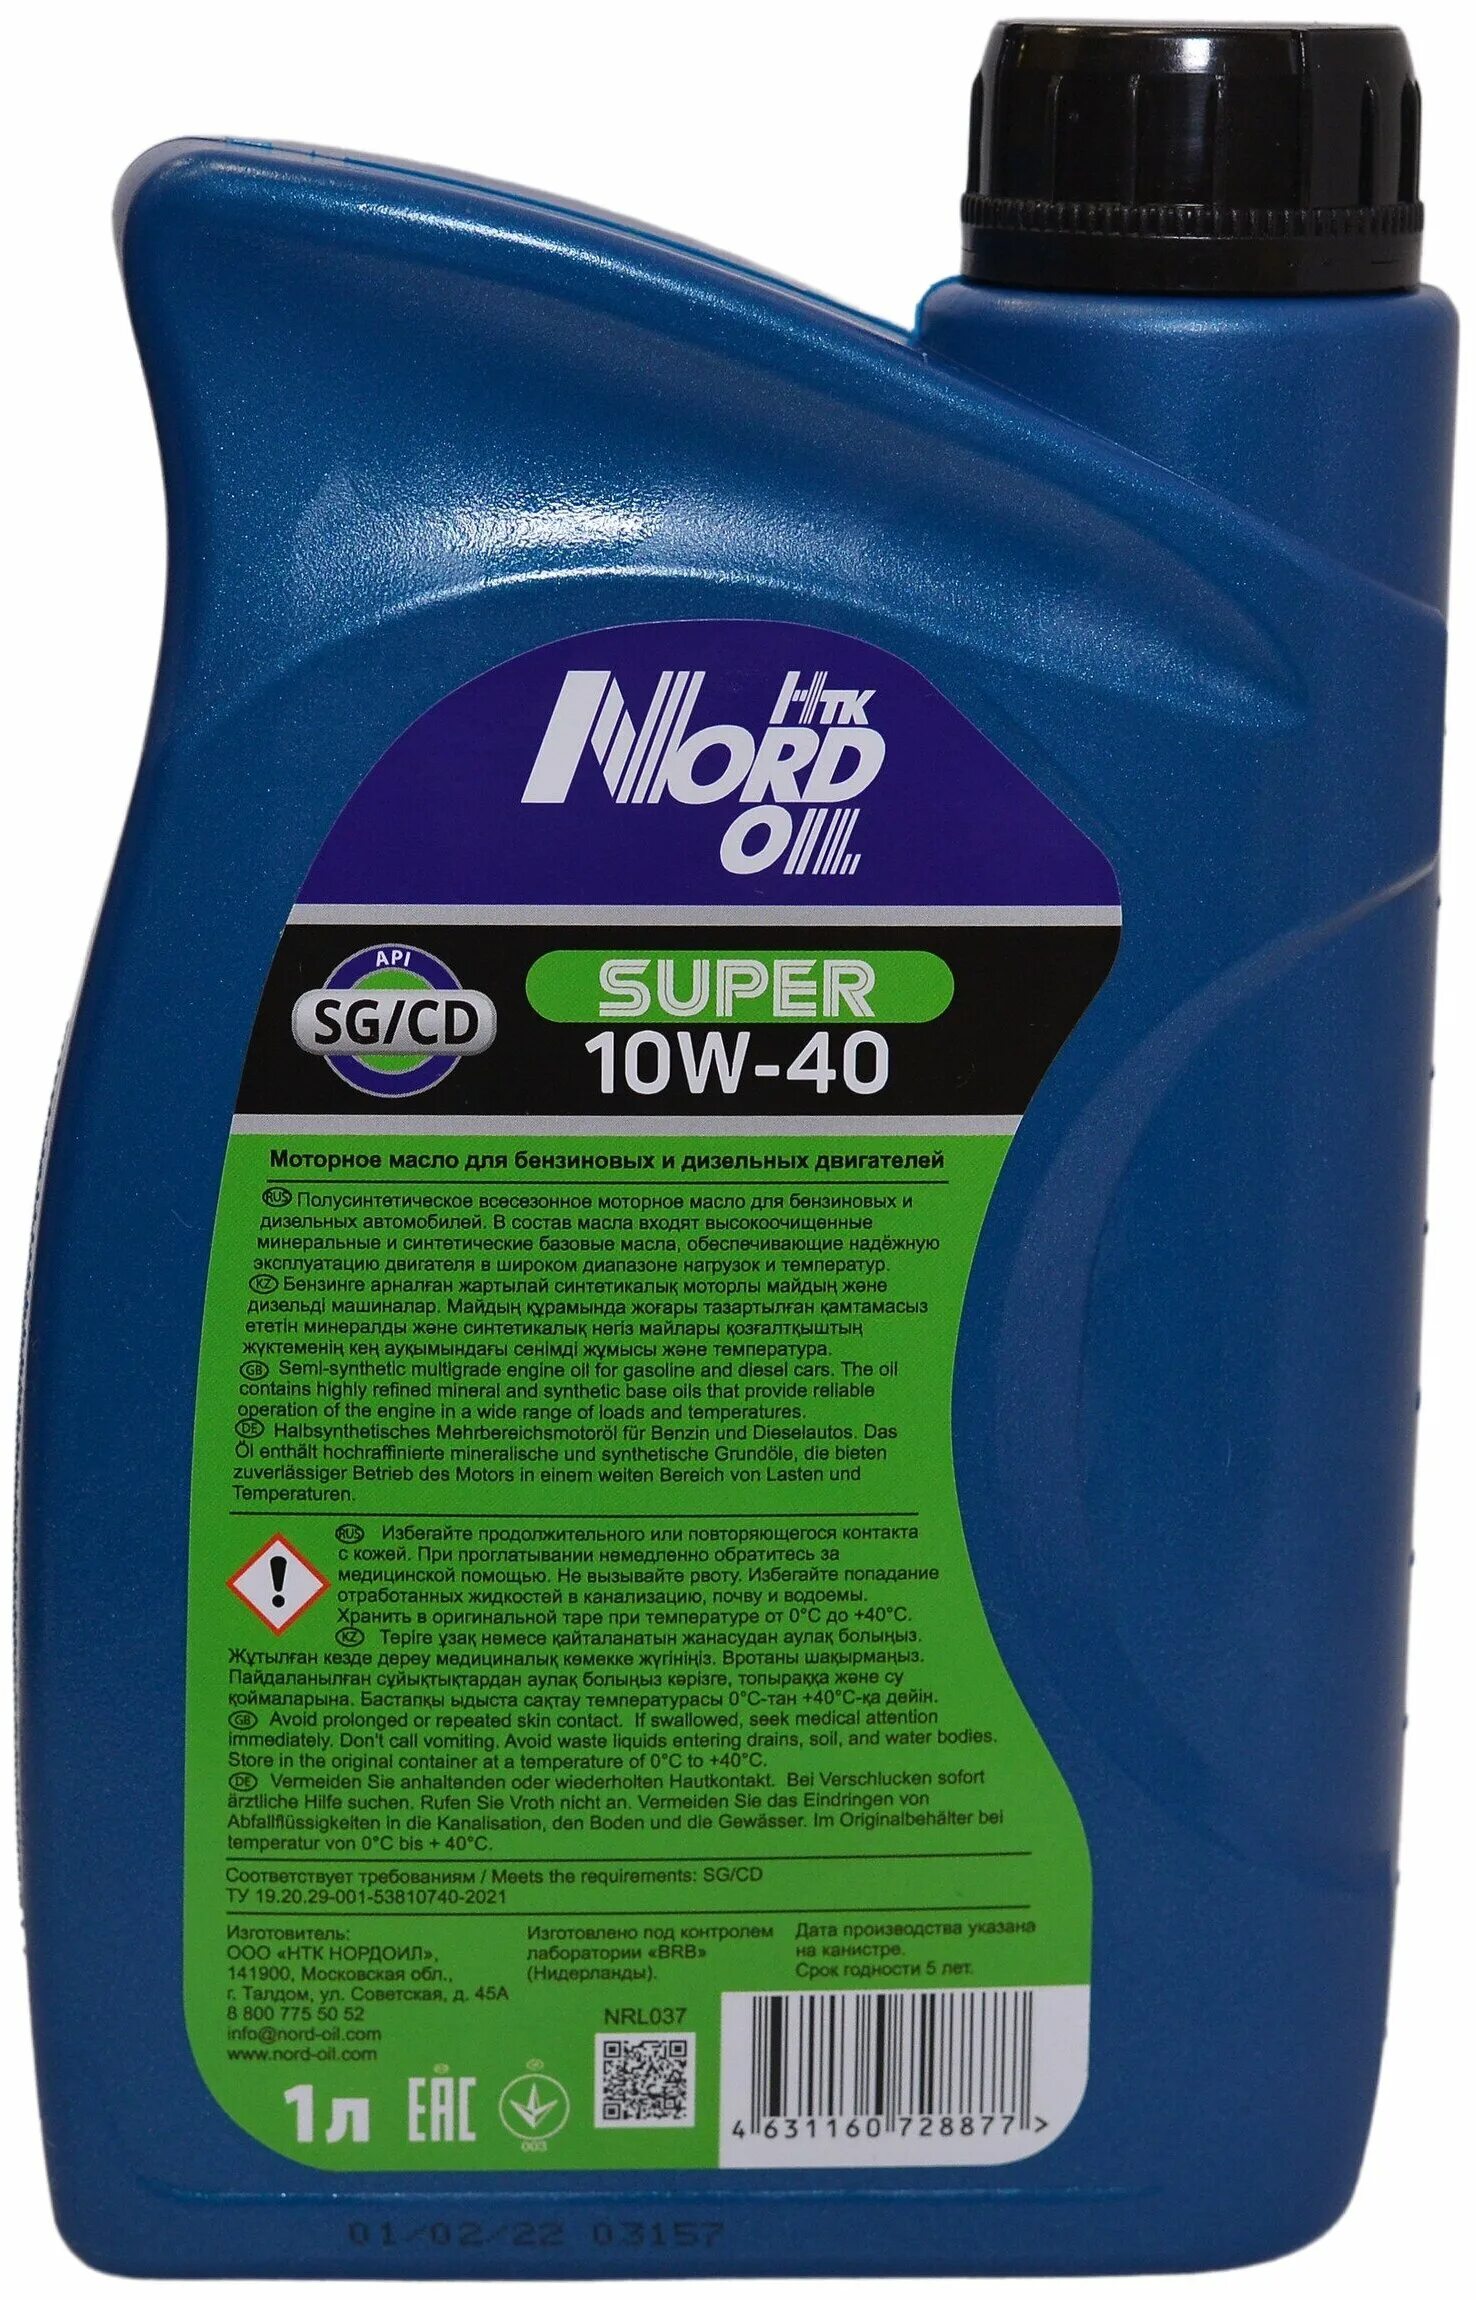 Nord Oil super 10w-40 SG CD П С 4л. 10w40 Nord Oil super SG/CD масло моторное, 1 л. Nrl038 Nord Oil масло Nord Oil super 10w-40 SG/CD 4л. Моторное масло super Hoss 10w40. Моторное масло форум отзывы